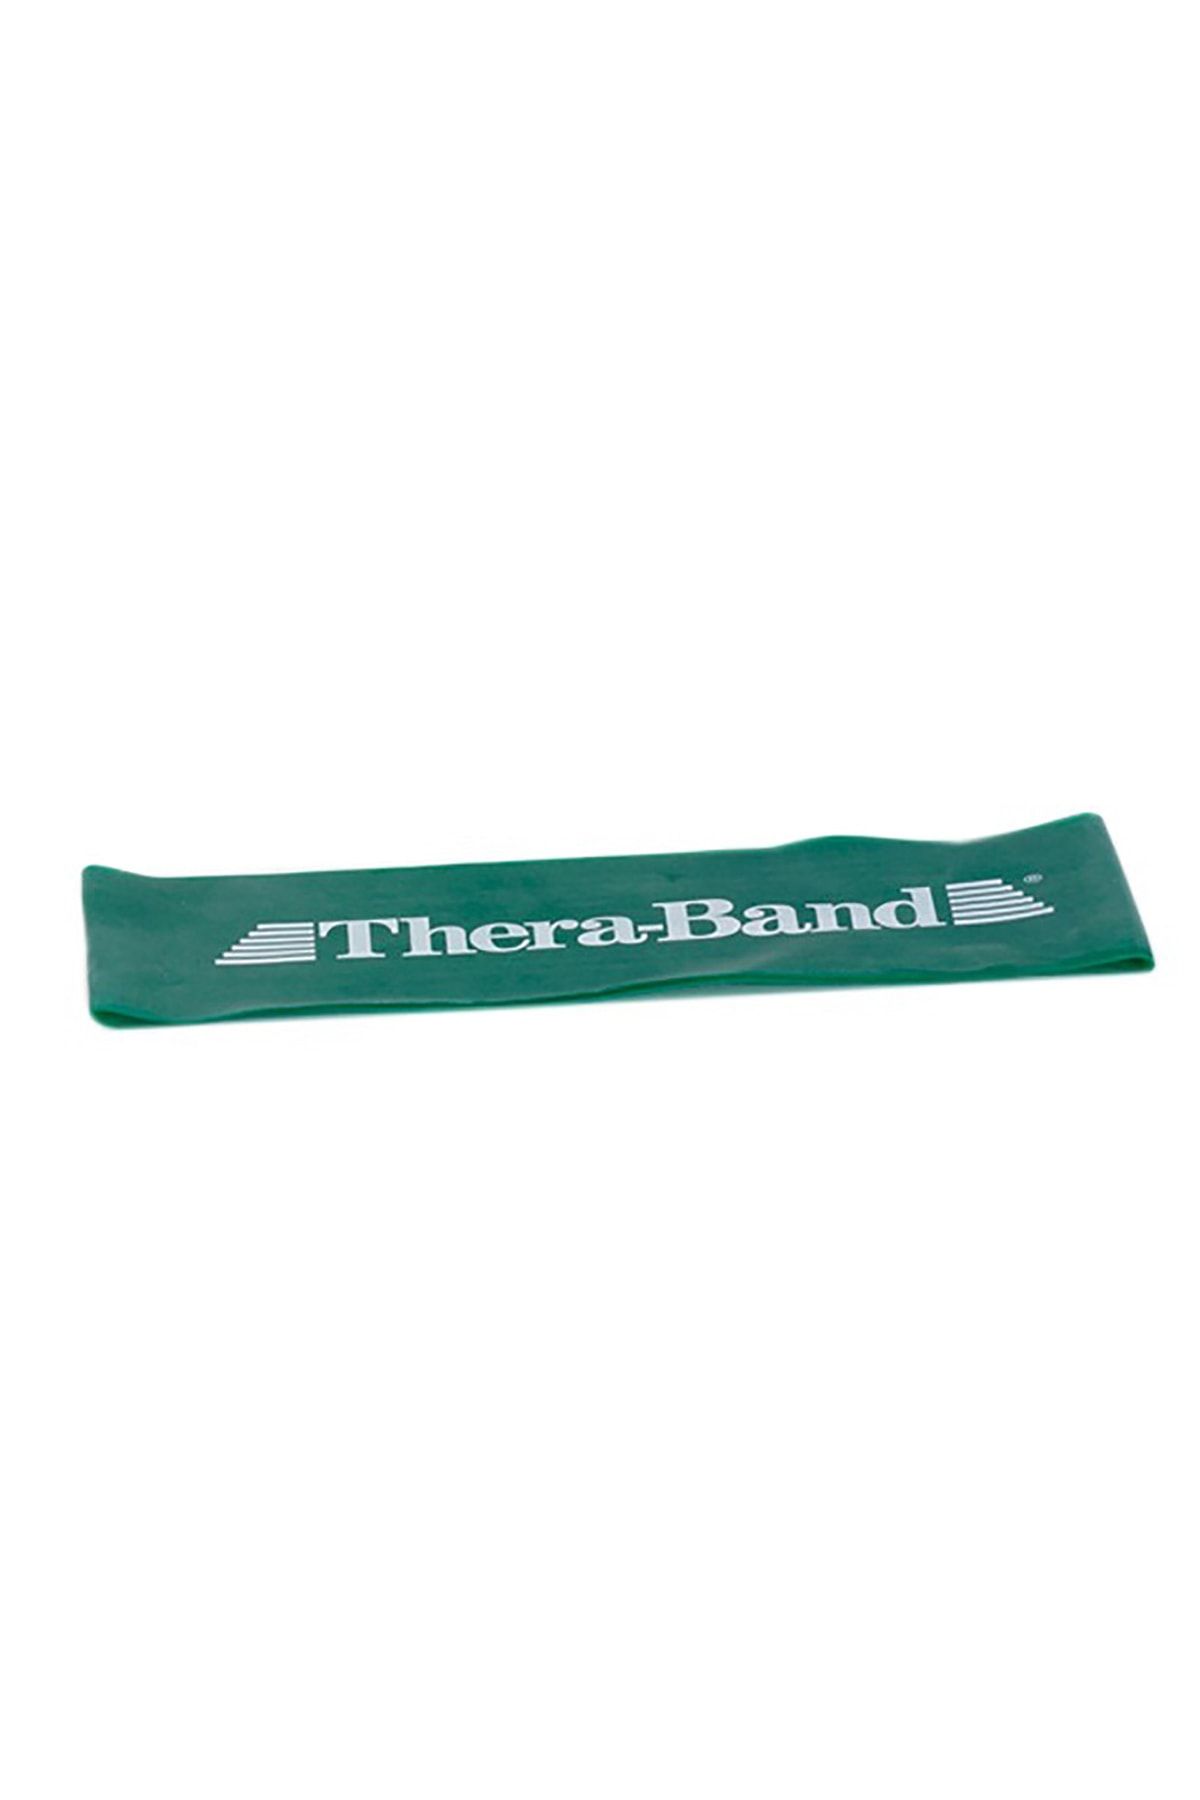 Theraband Thera band Egzersiz Bandı LOOP 7,6 x 45,5 cm Yeşil